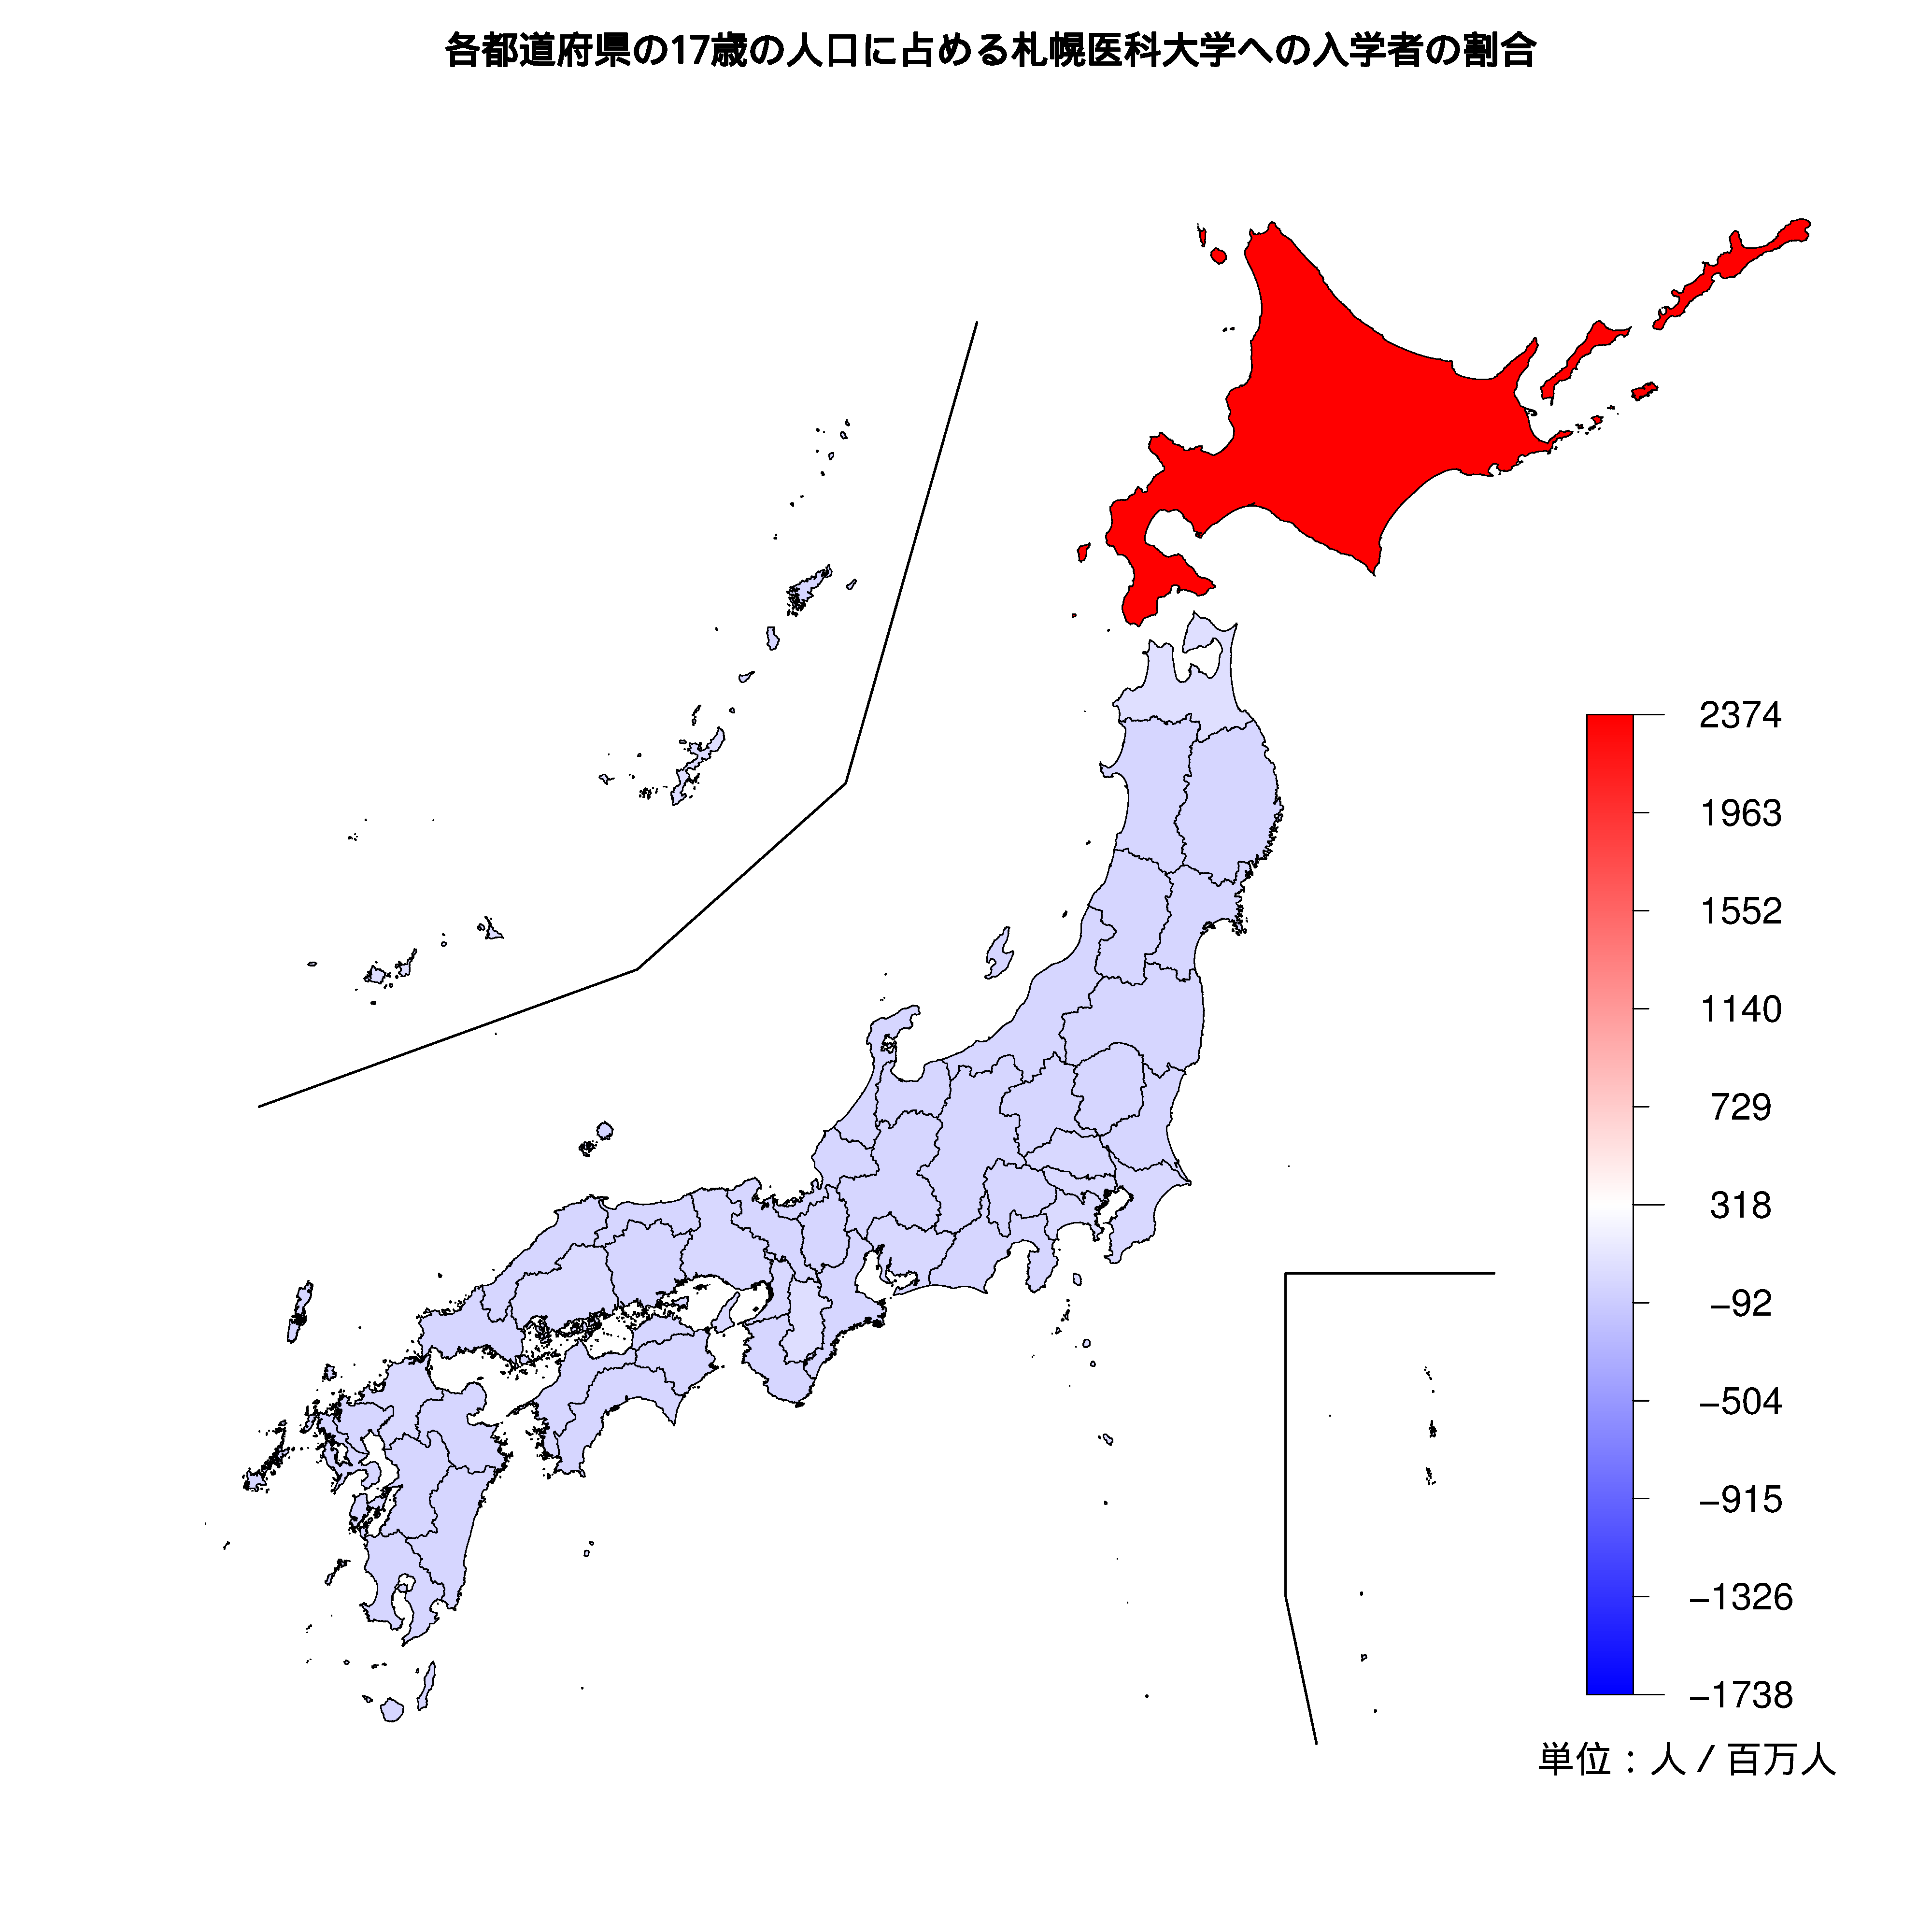 札幌医科大学への入学者が多い都道府県の色分け地図